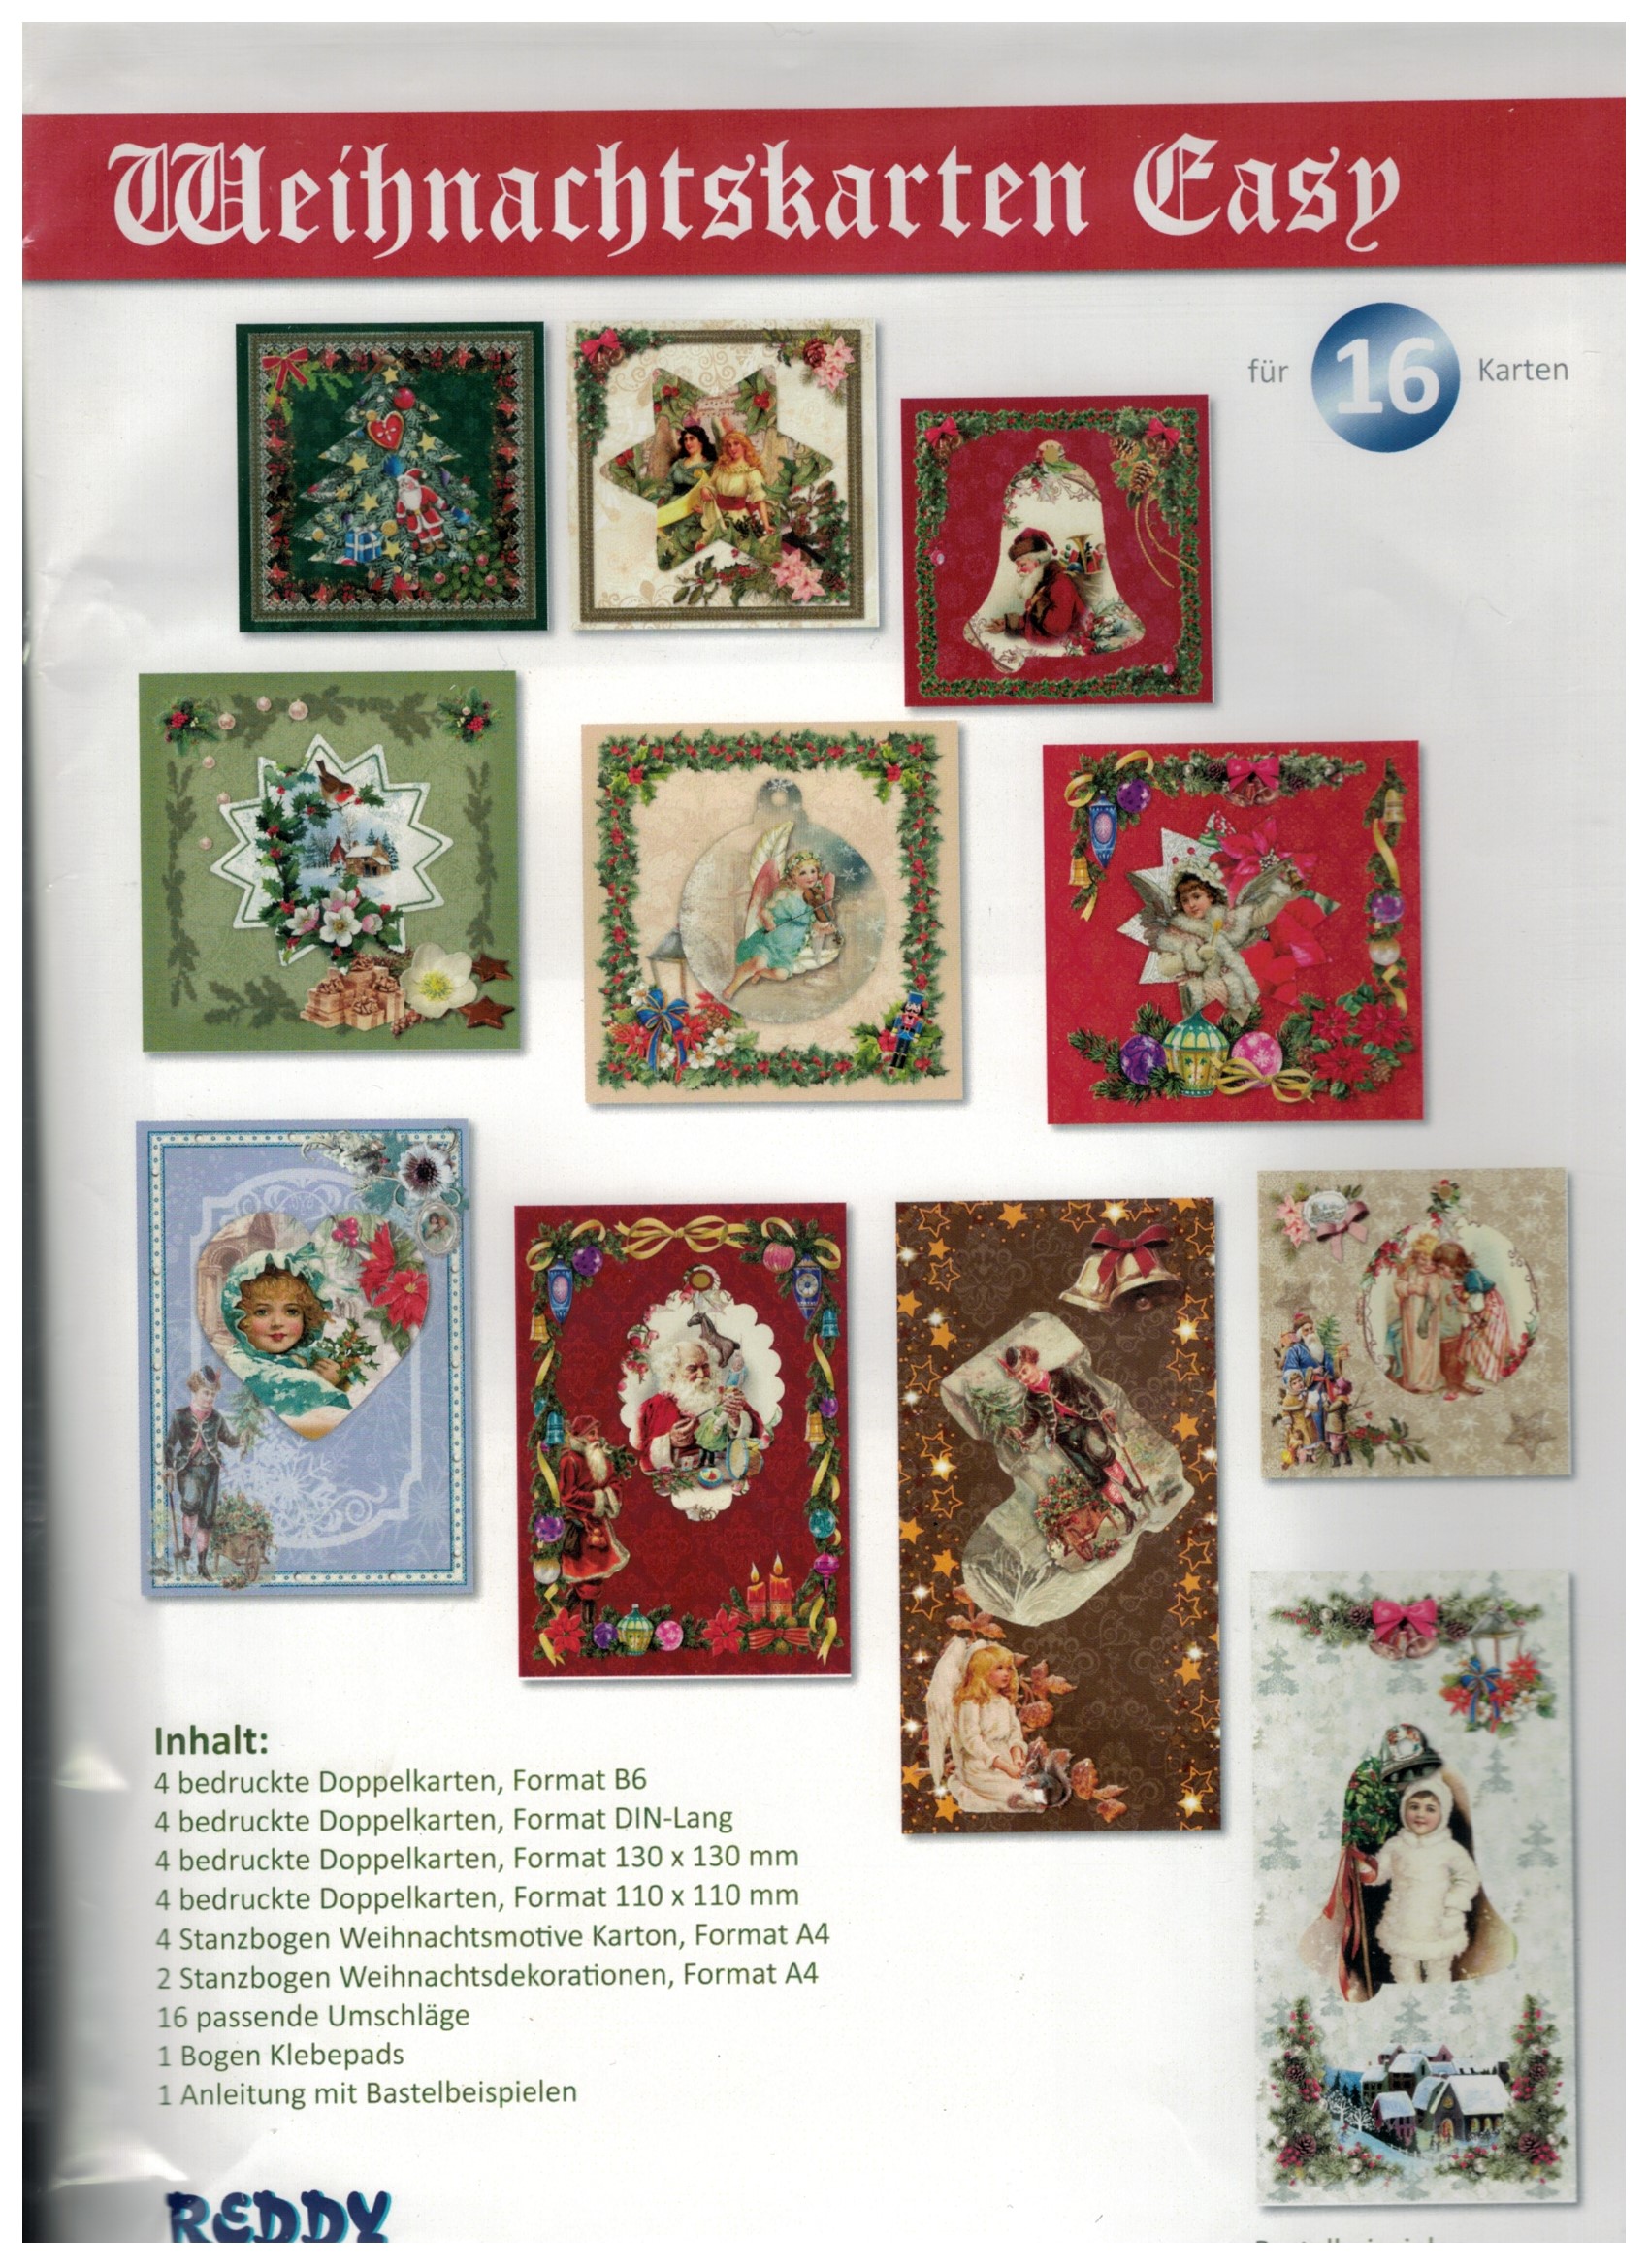 Karten-Bastelmappe - Weihnachtskarten Easy für 16 Karten